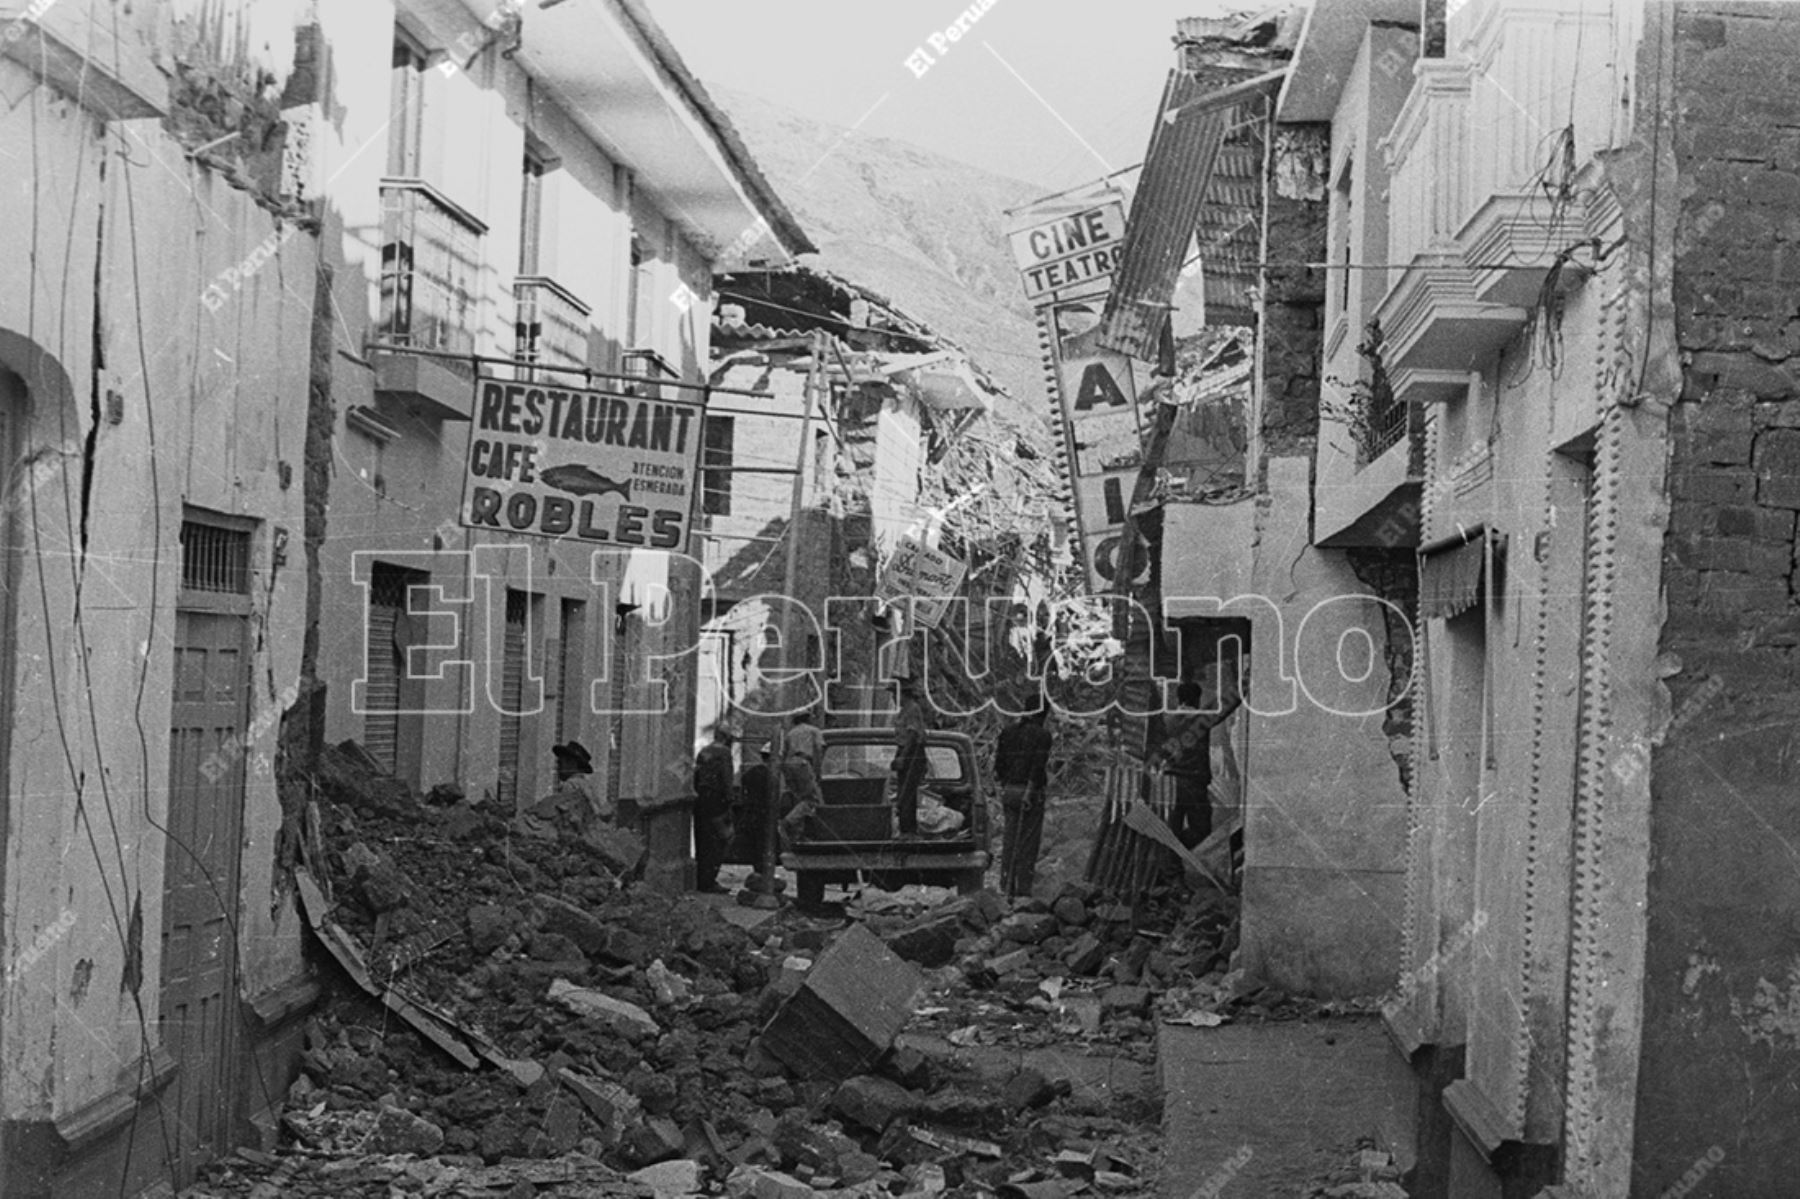 Huaraz -1 junio 1970 / El terremoto dejó en escombros gran parte de la ciudad de Huaraz. Foto: Archivo Histórico de El Peruano